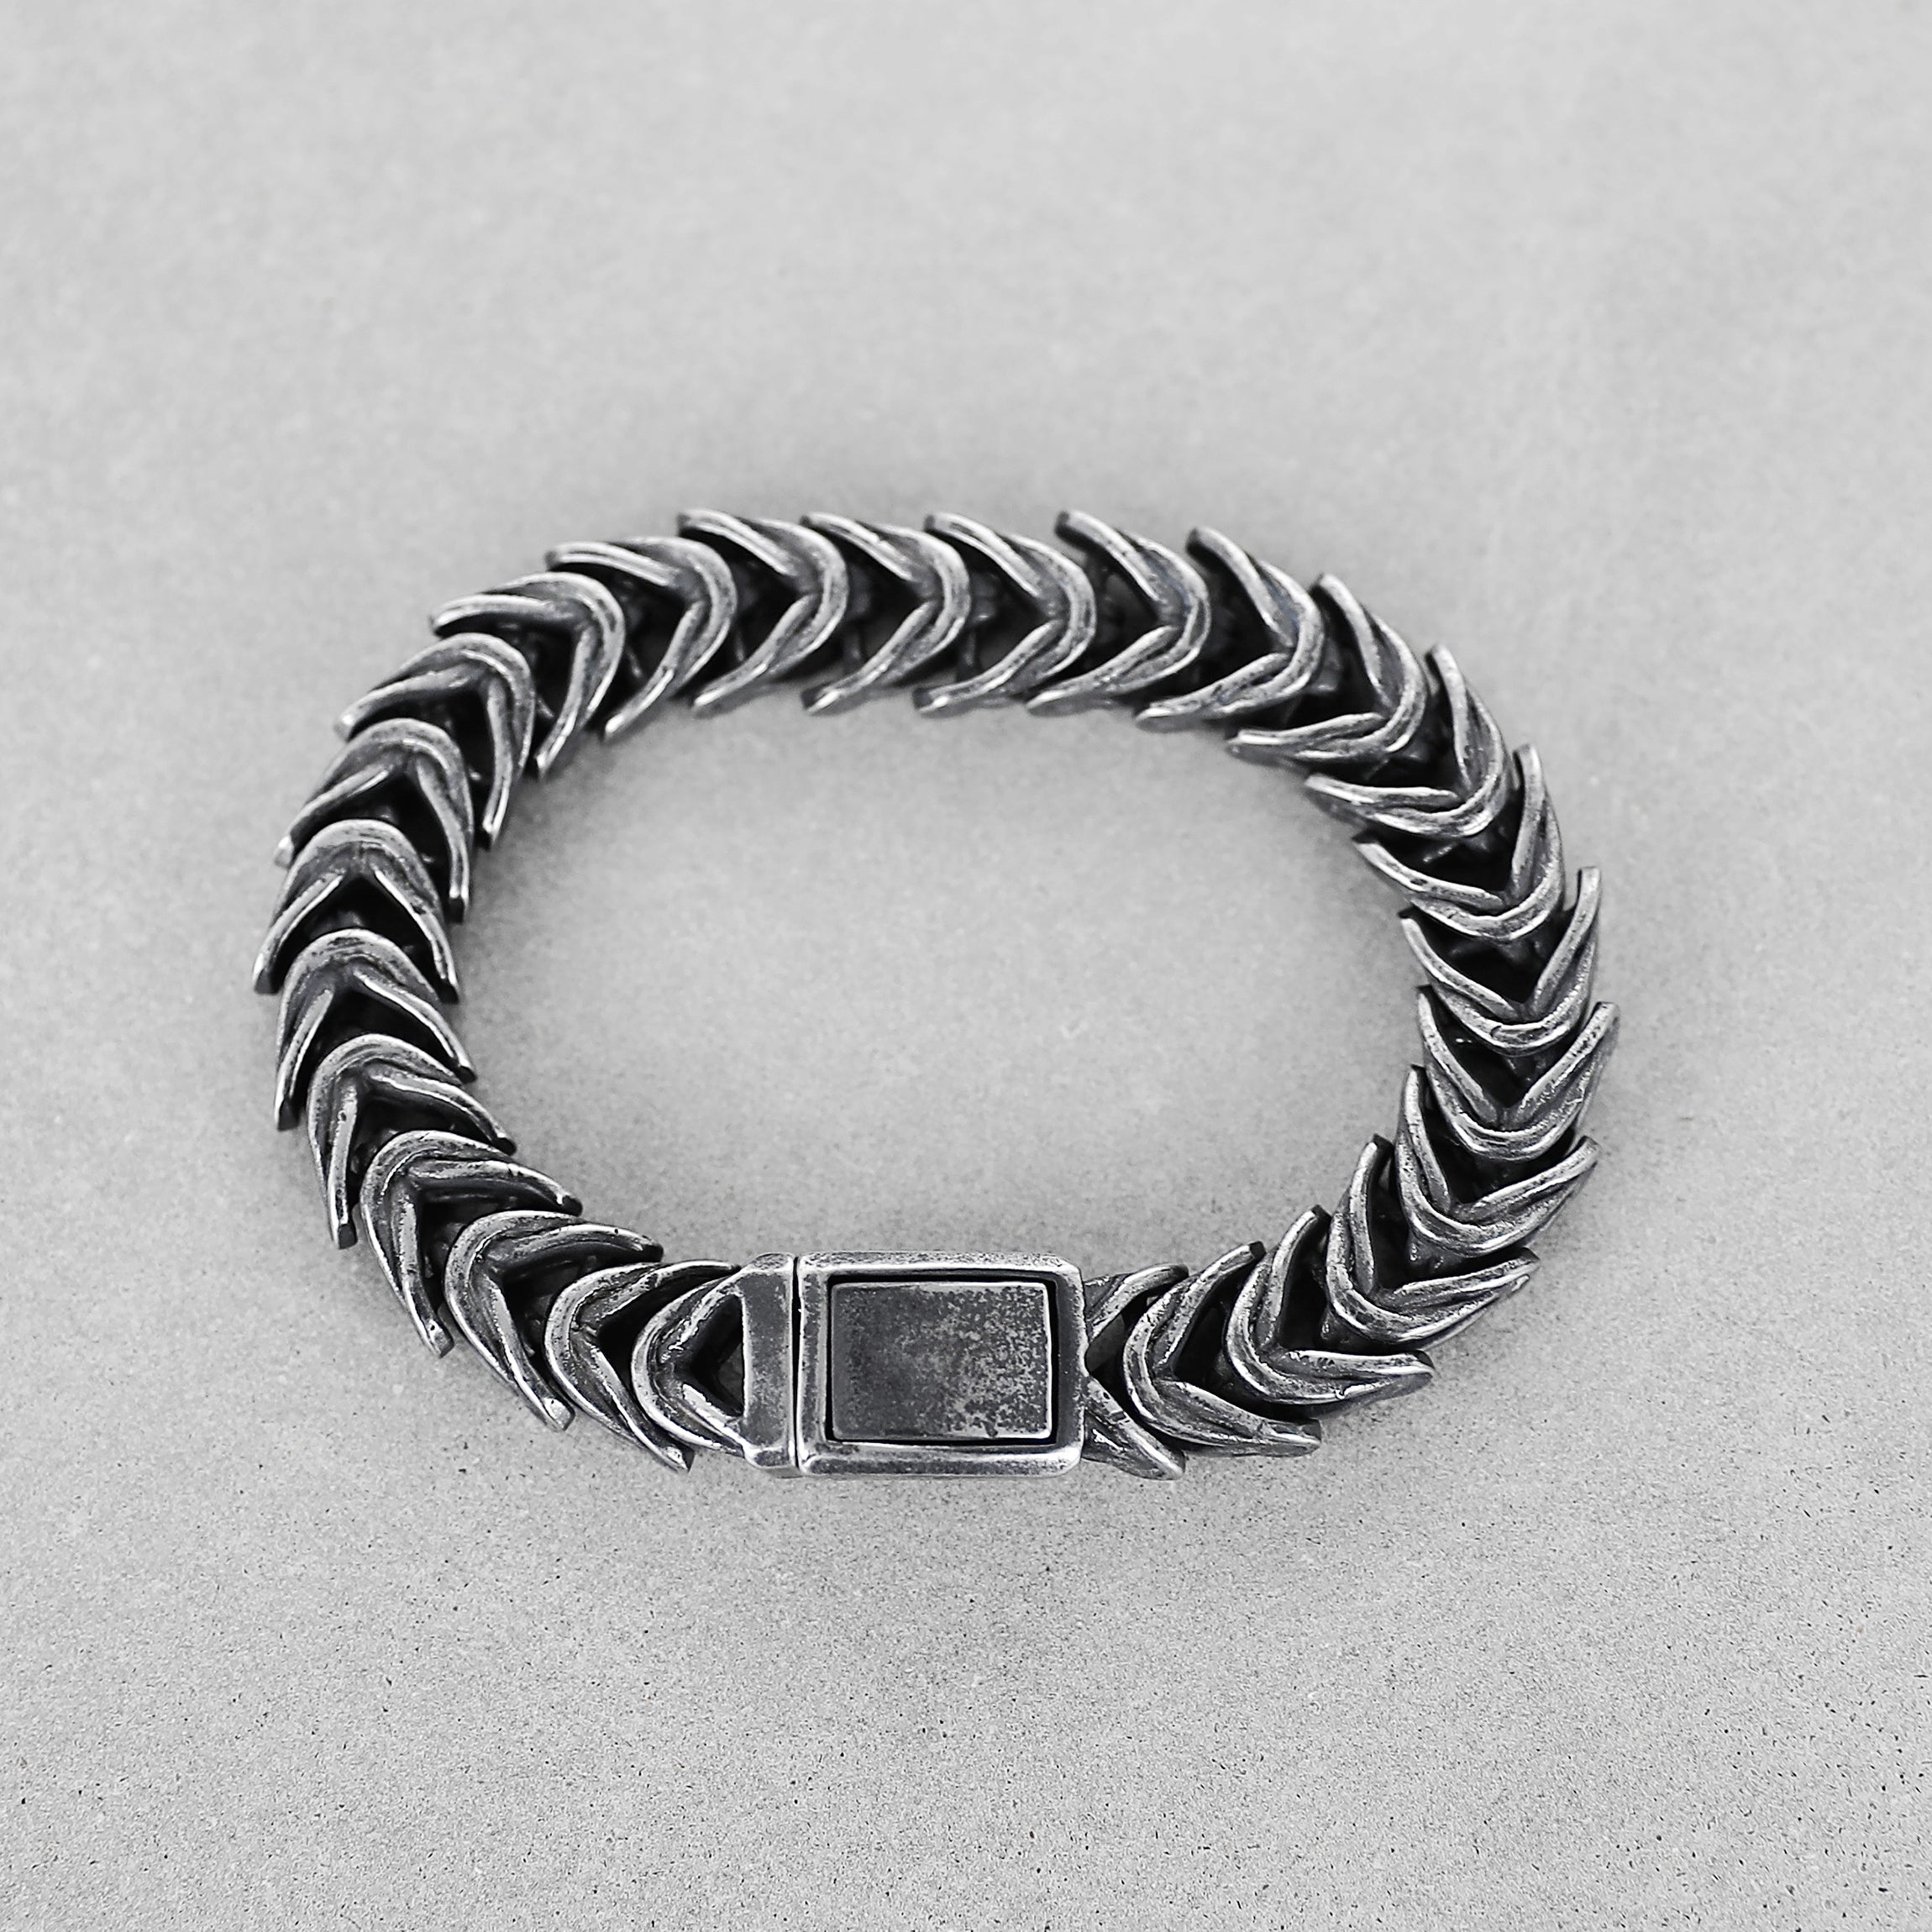 Animal Spine Bracelet - Aged Silver 13mm